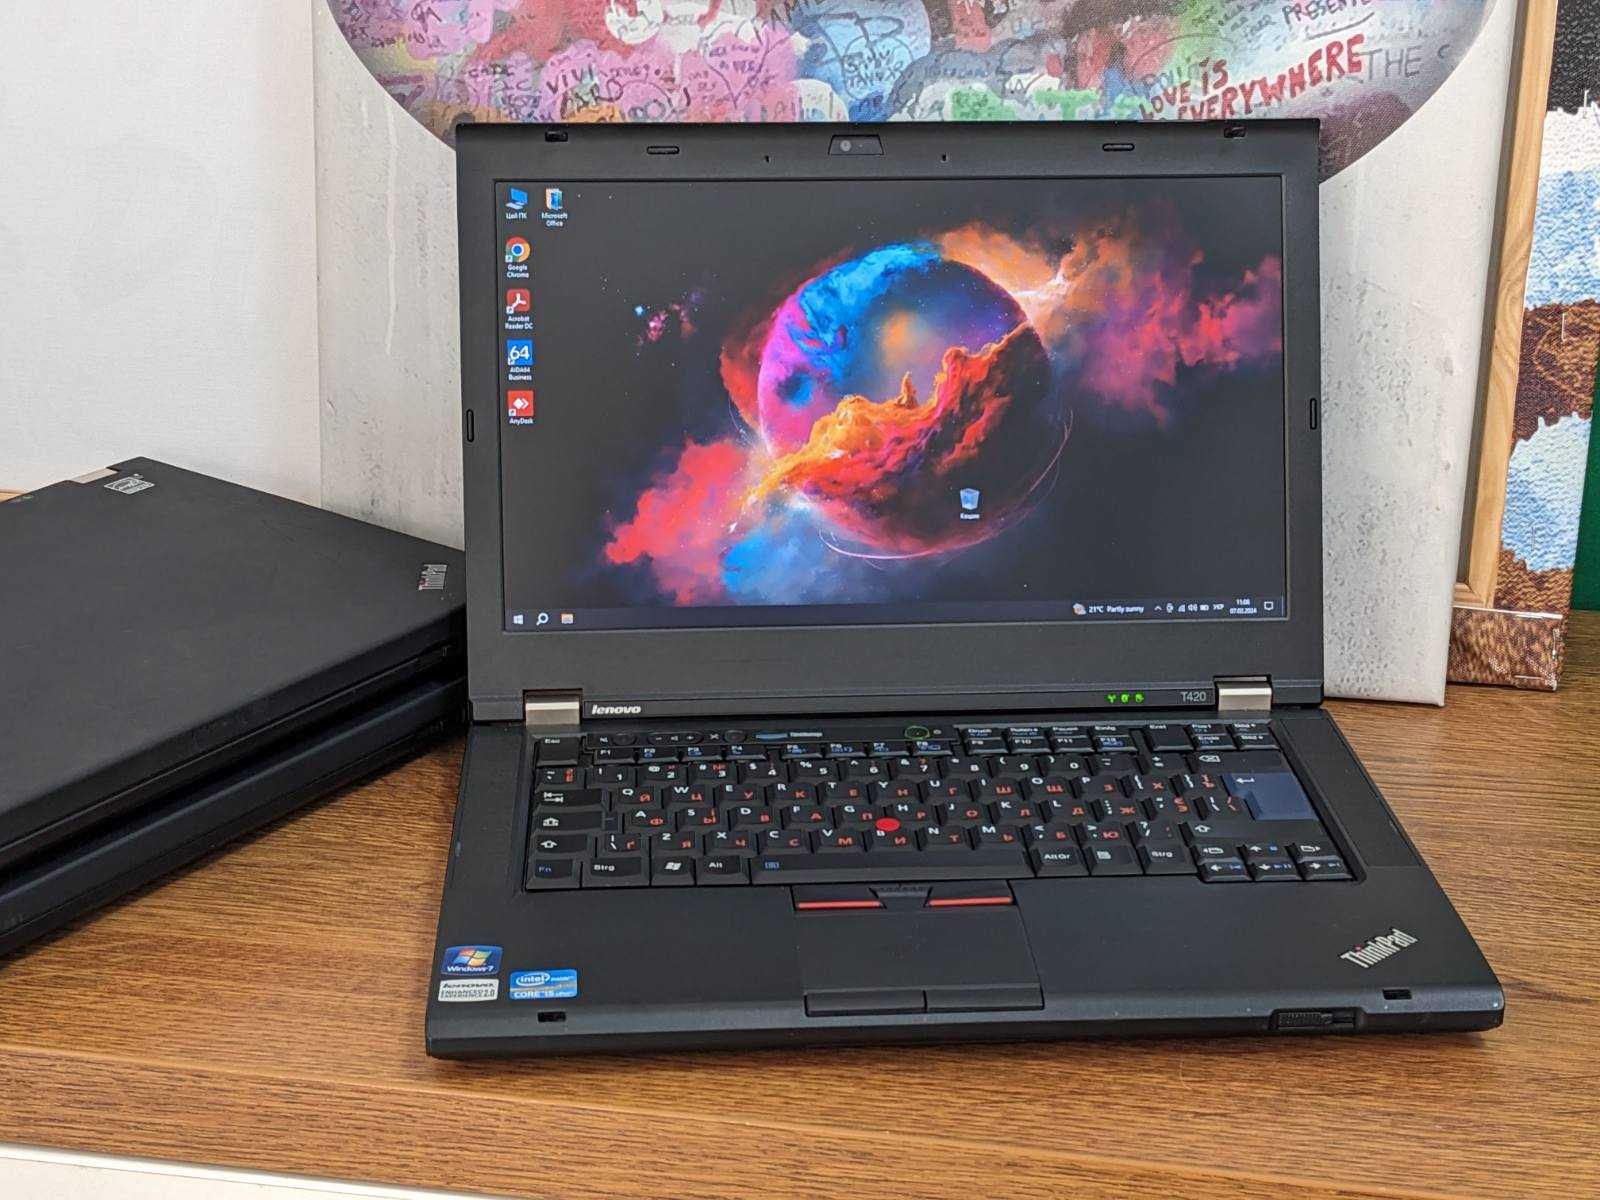 Lenovo ThinkPad T420 - ноутбук для дому, батарея 3+ години роботи